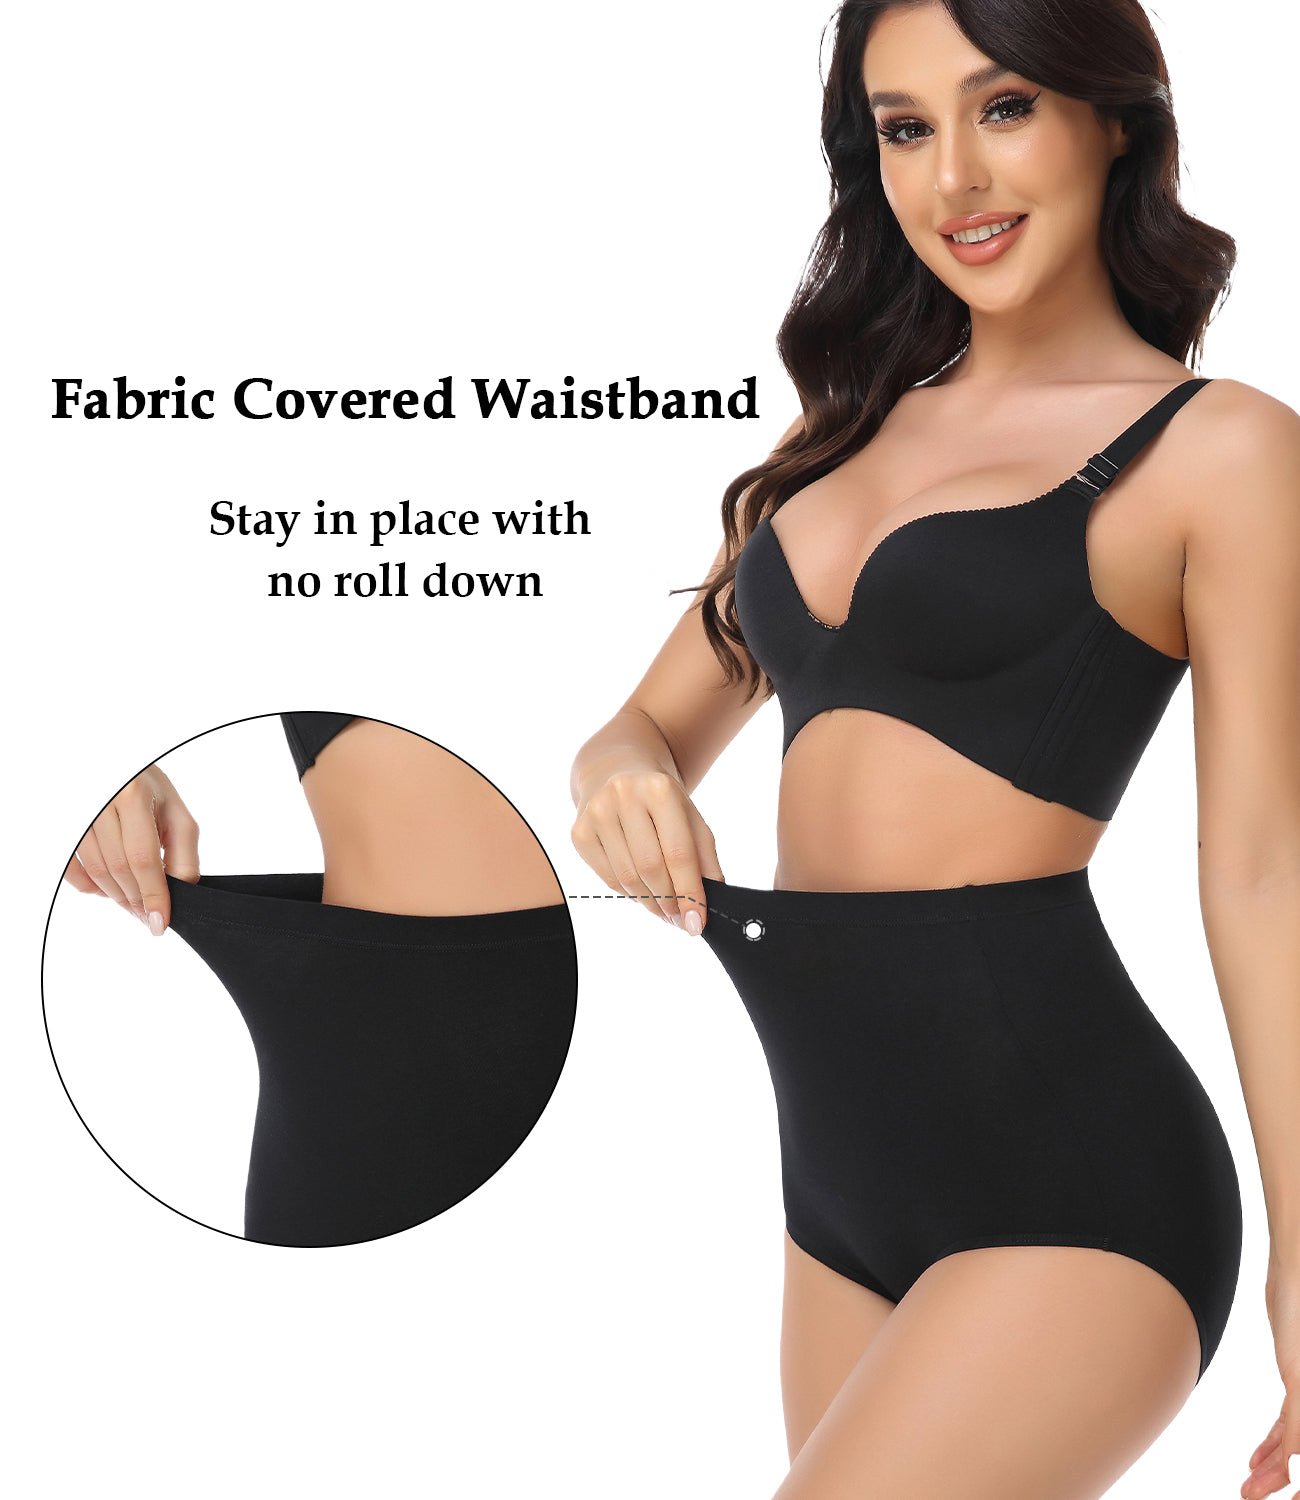 wirarpa Women's Underwear Cotton Super High Waisted Briefs Stretch Ful –  Wirarpa Apparel, Inc.